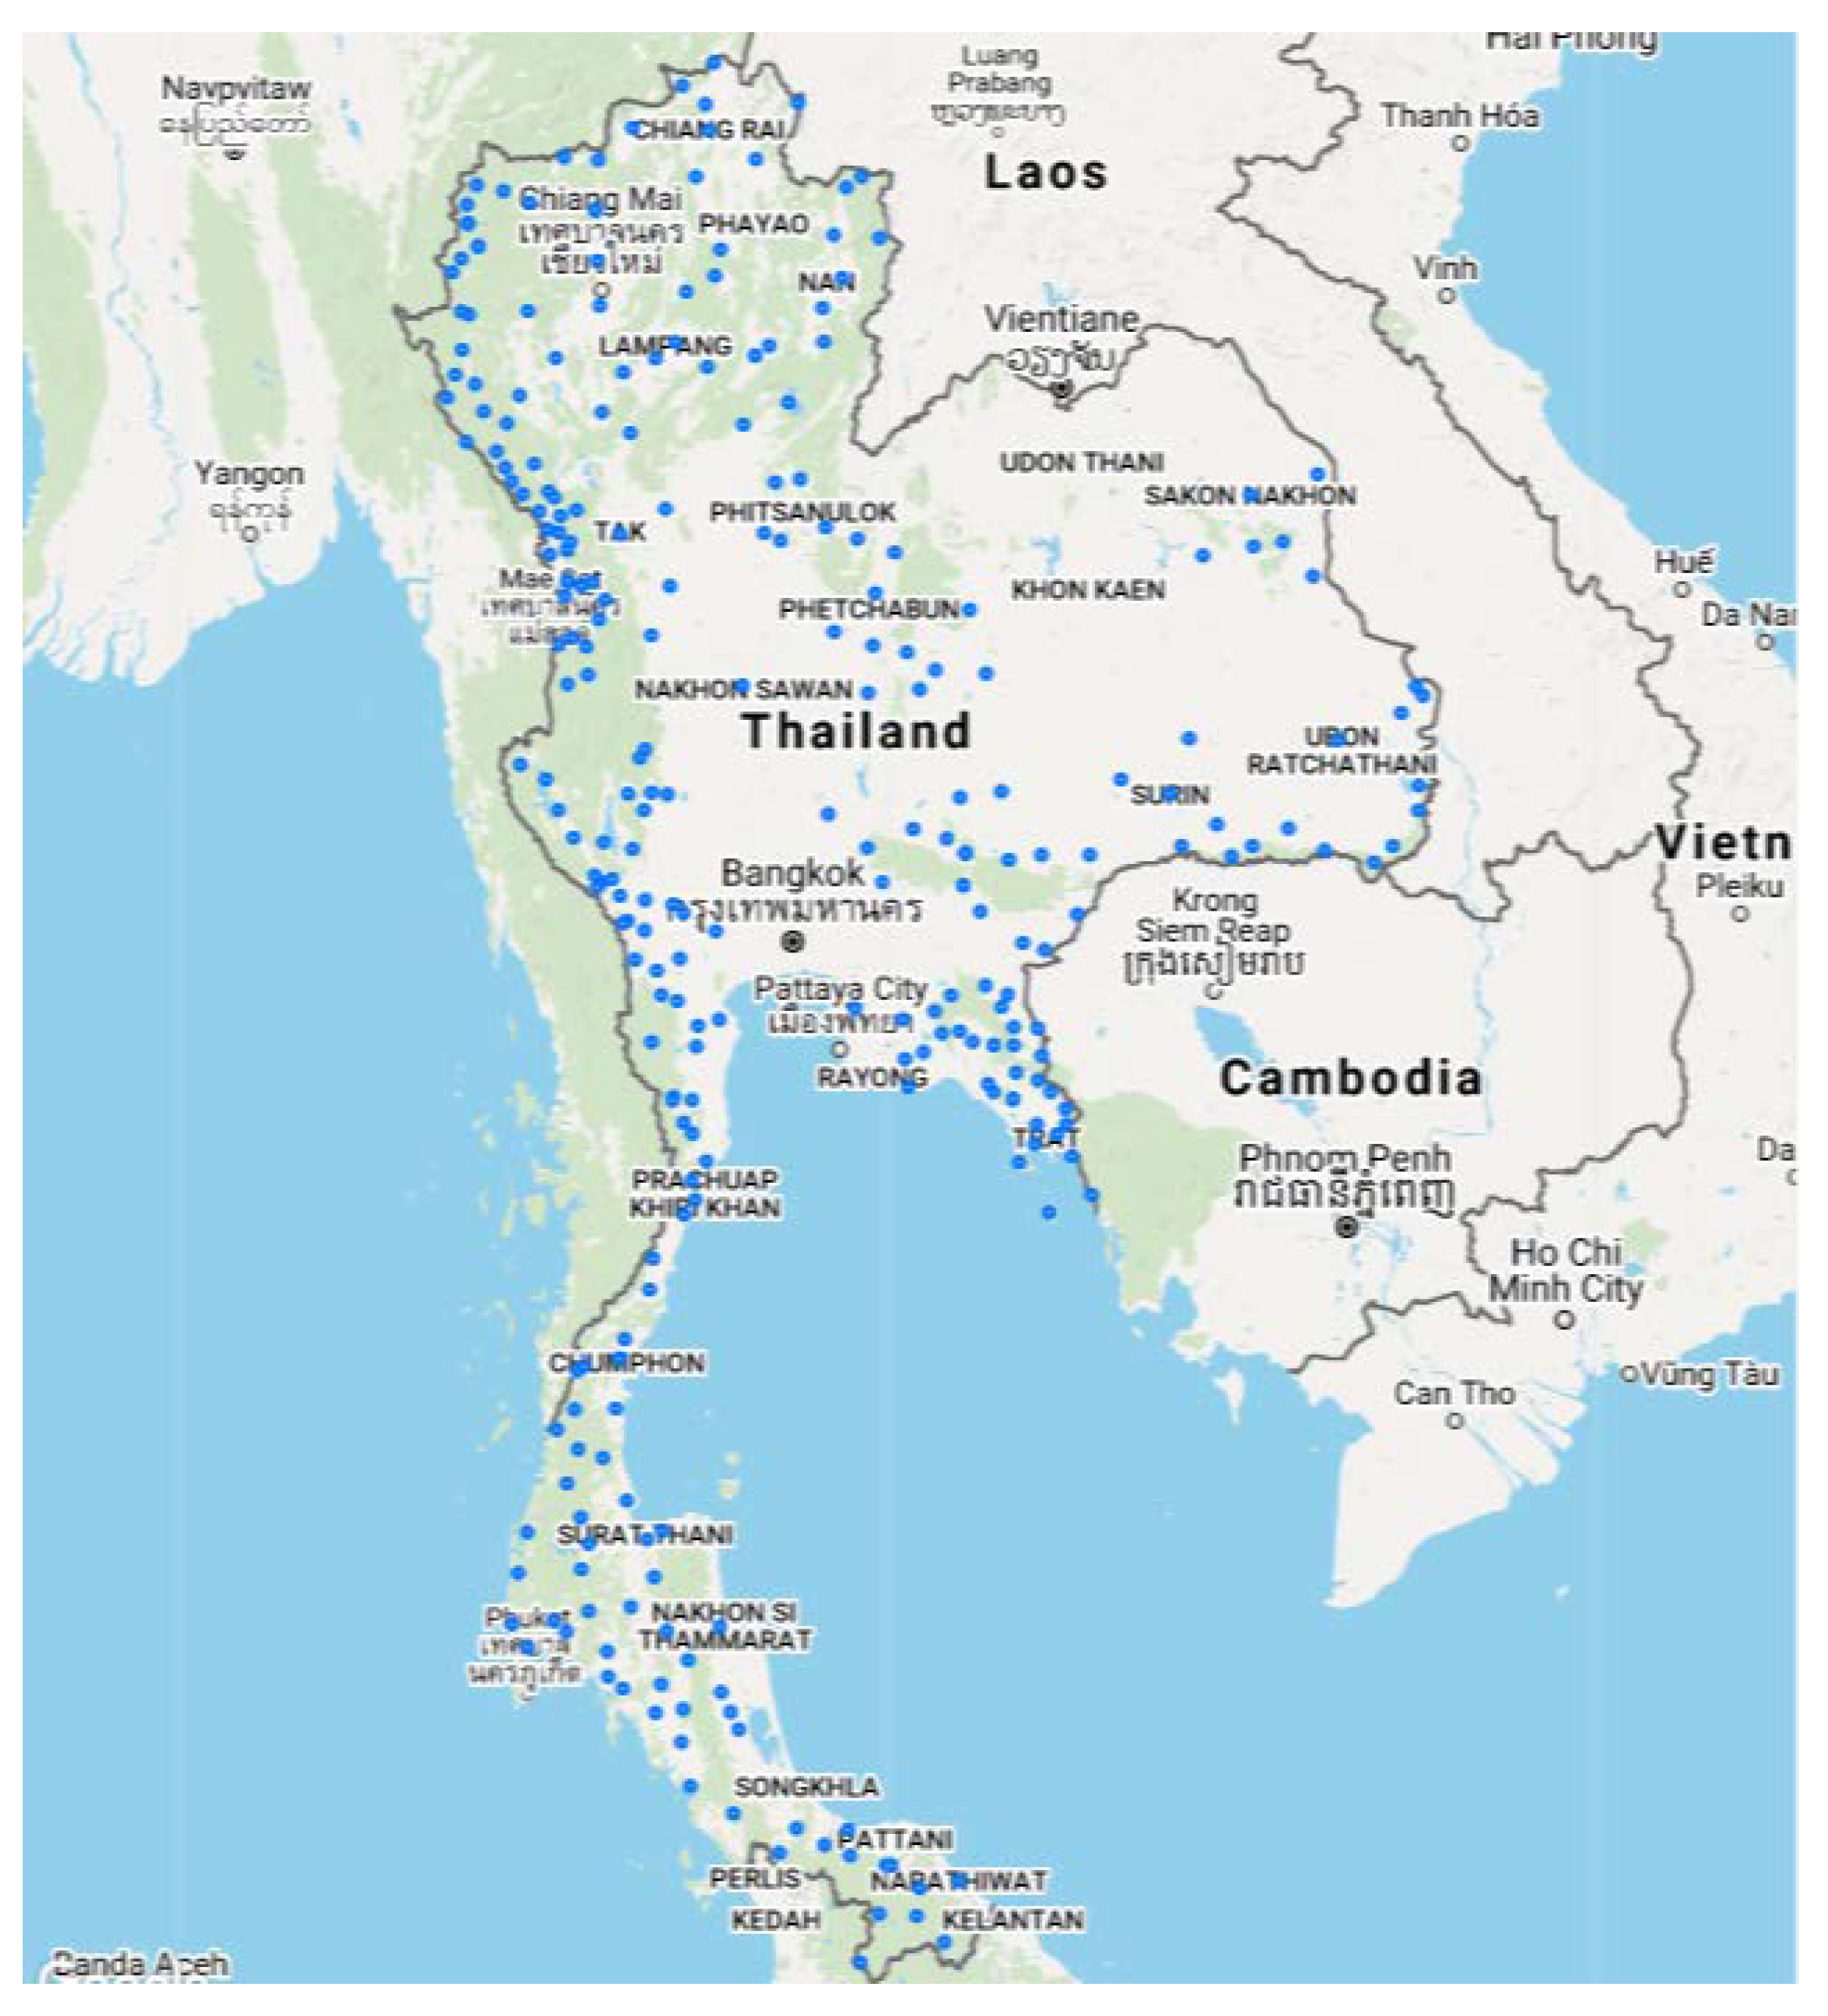 cdc travel malaria thailand